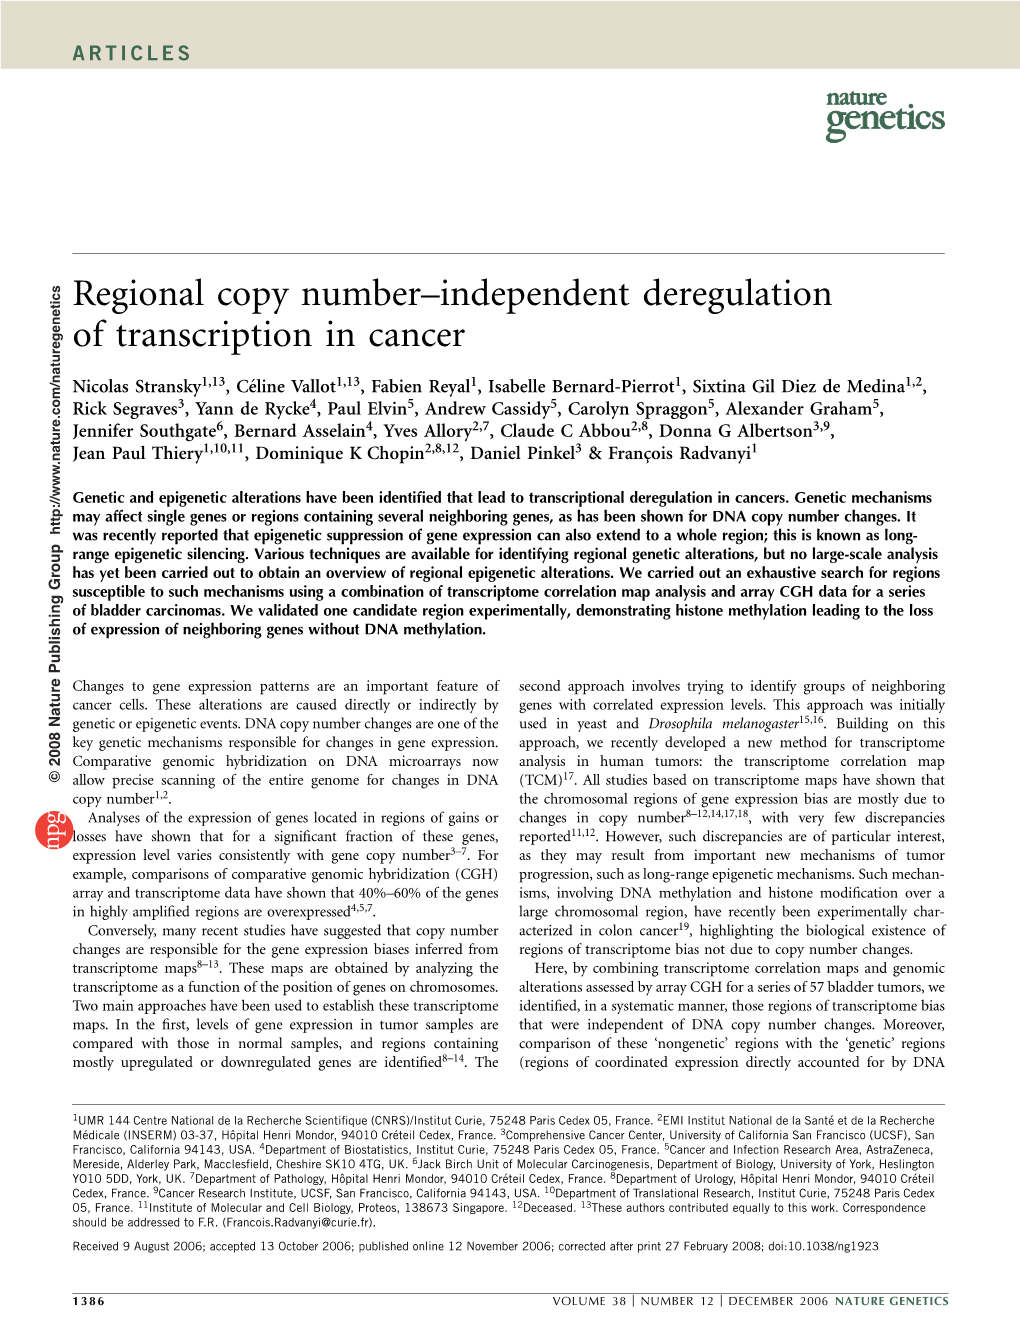 Regional Copy Number–Independent Deregulation of Transcription in Cancer